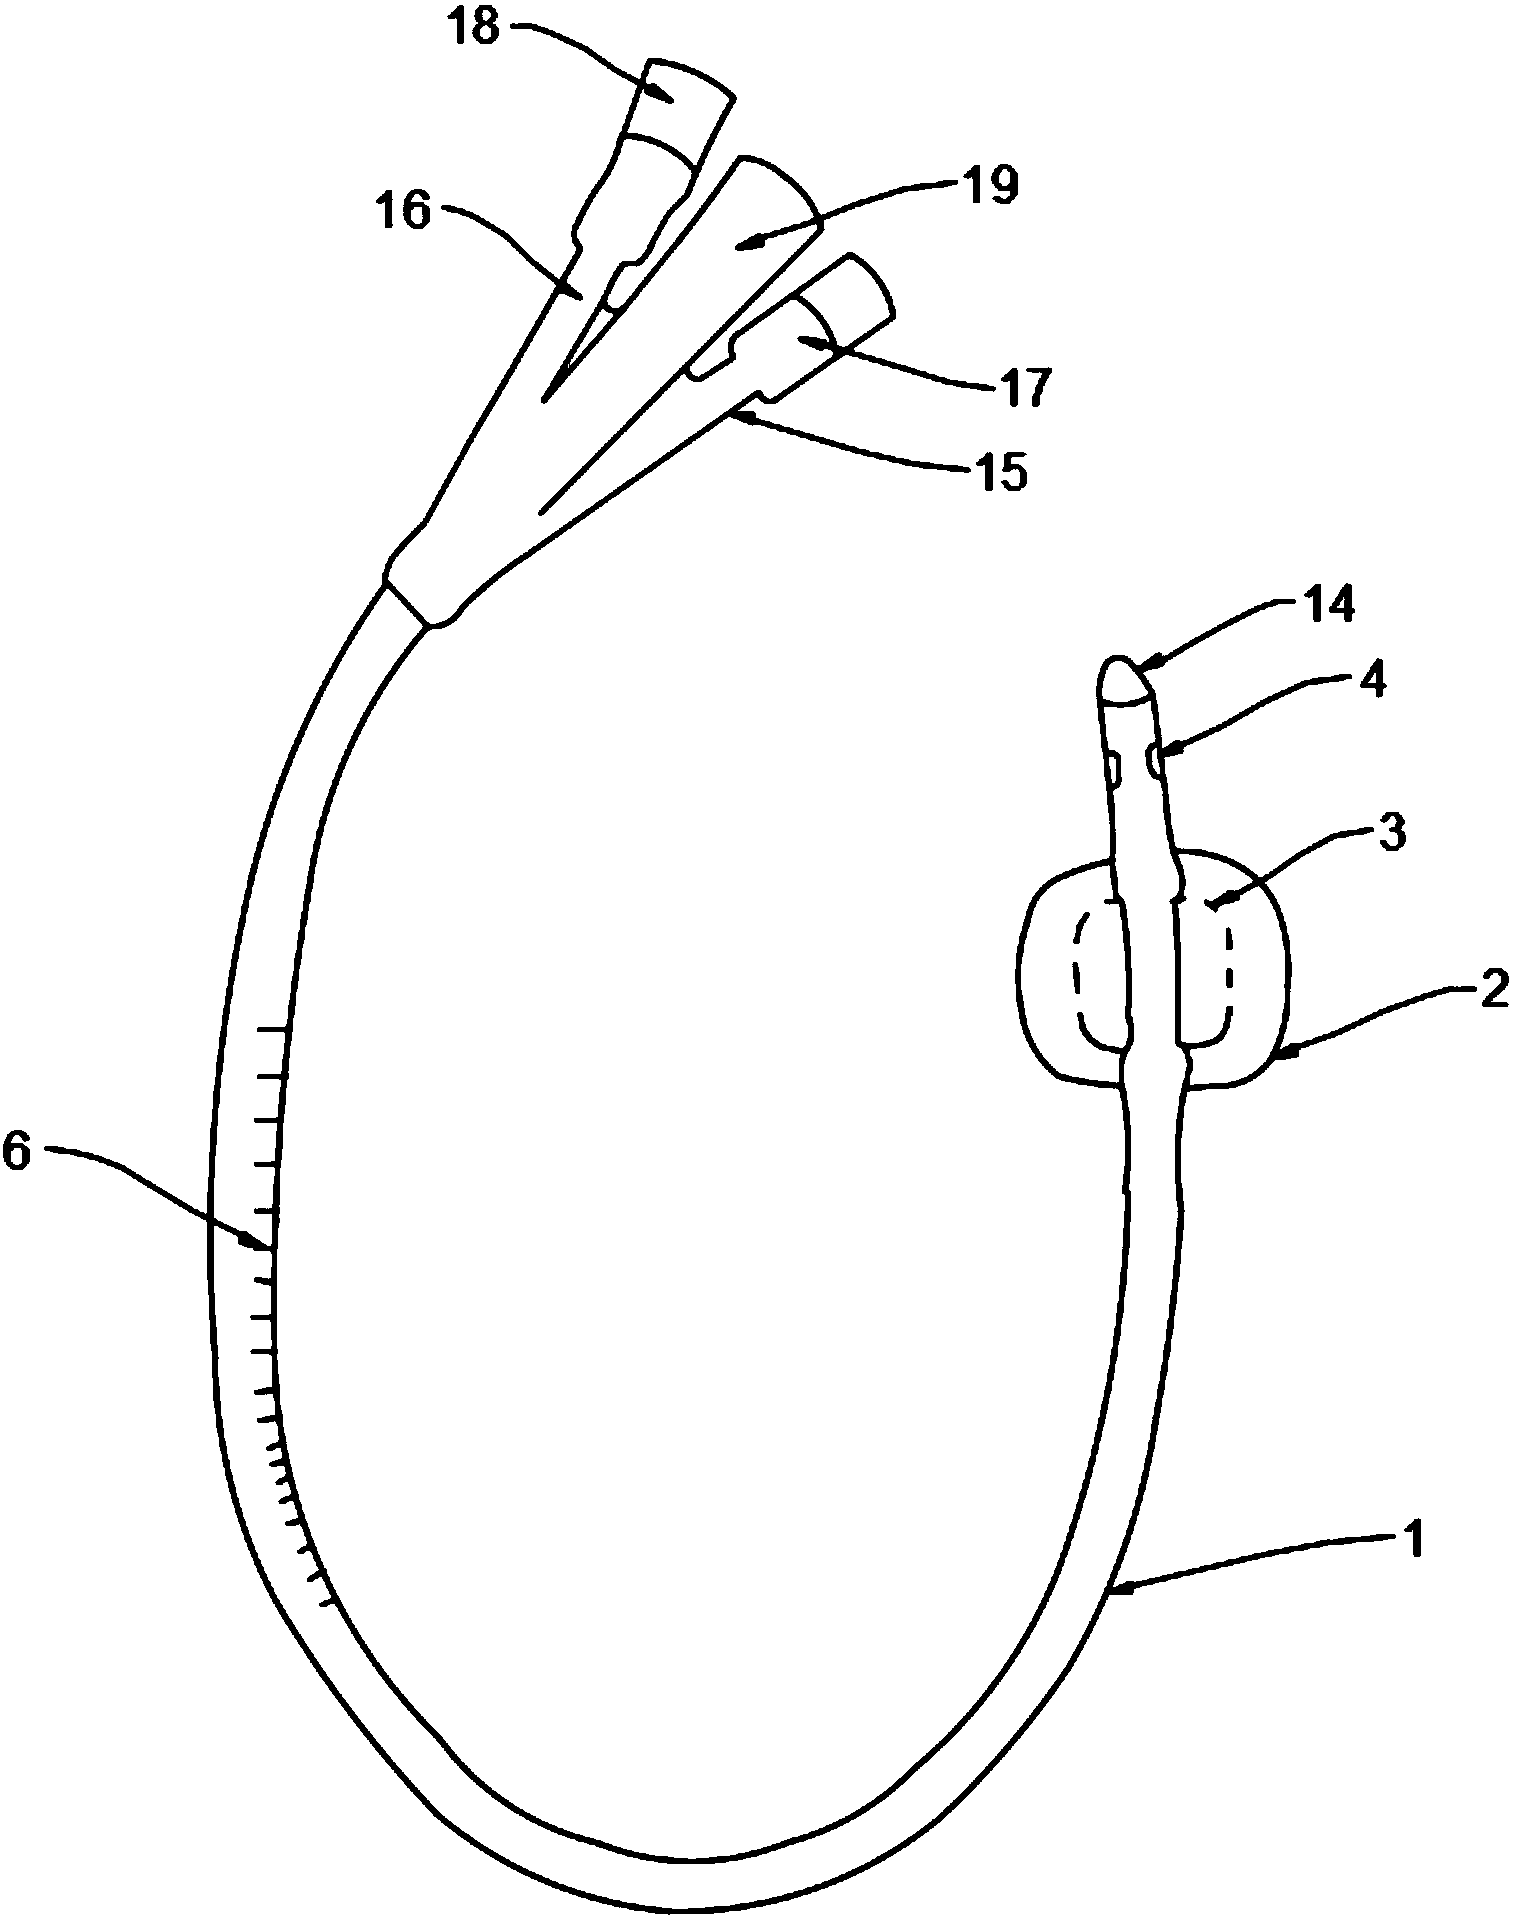 三腔导尿管的结构图解图片